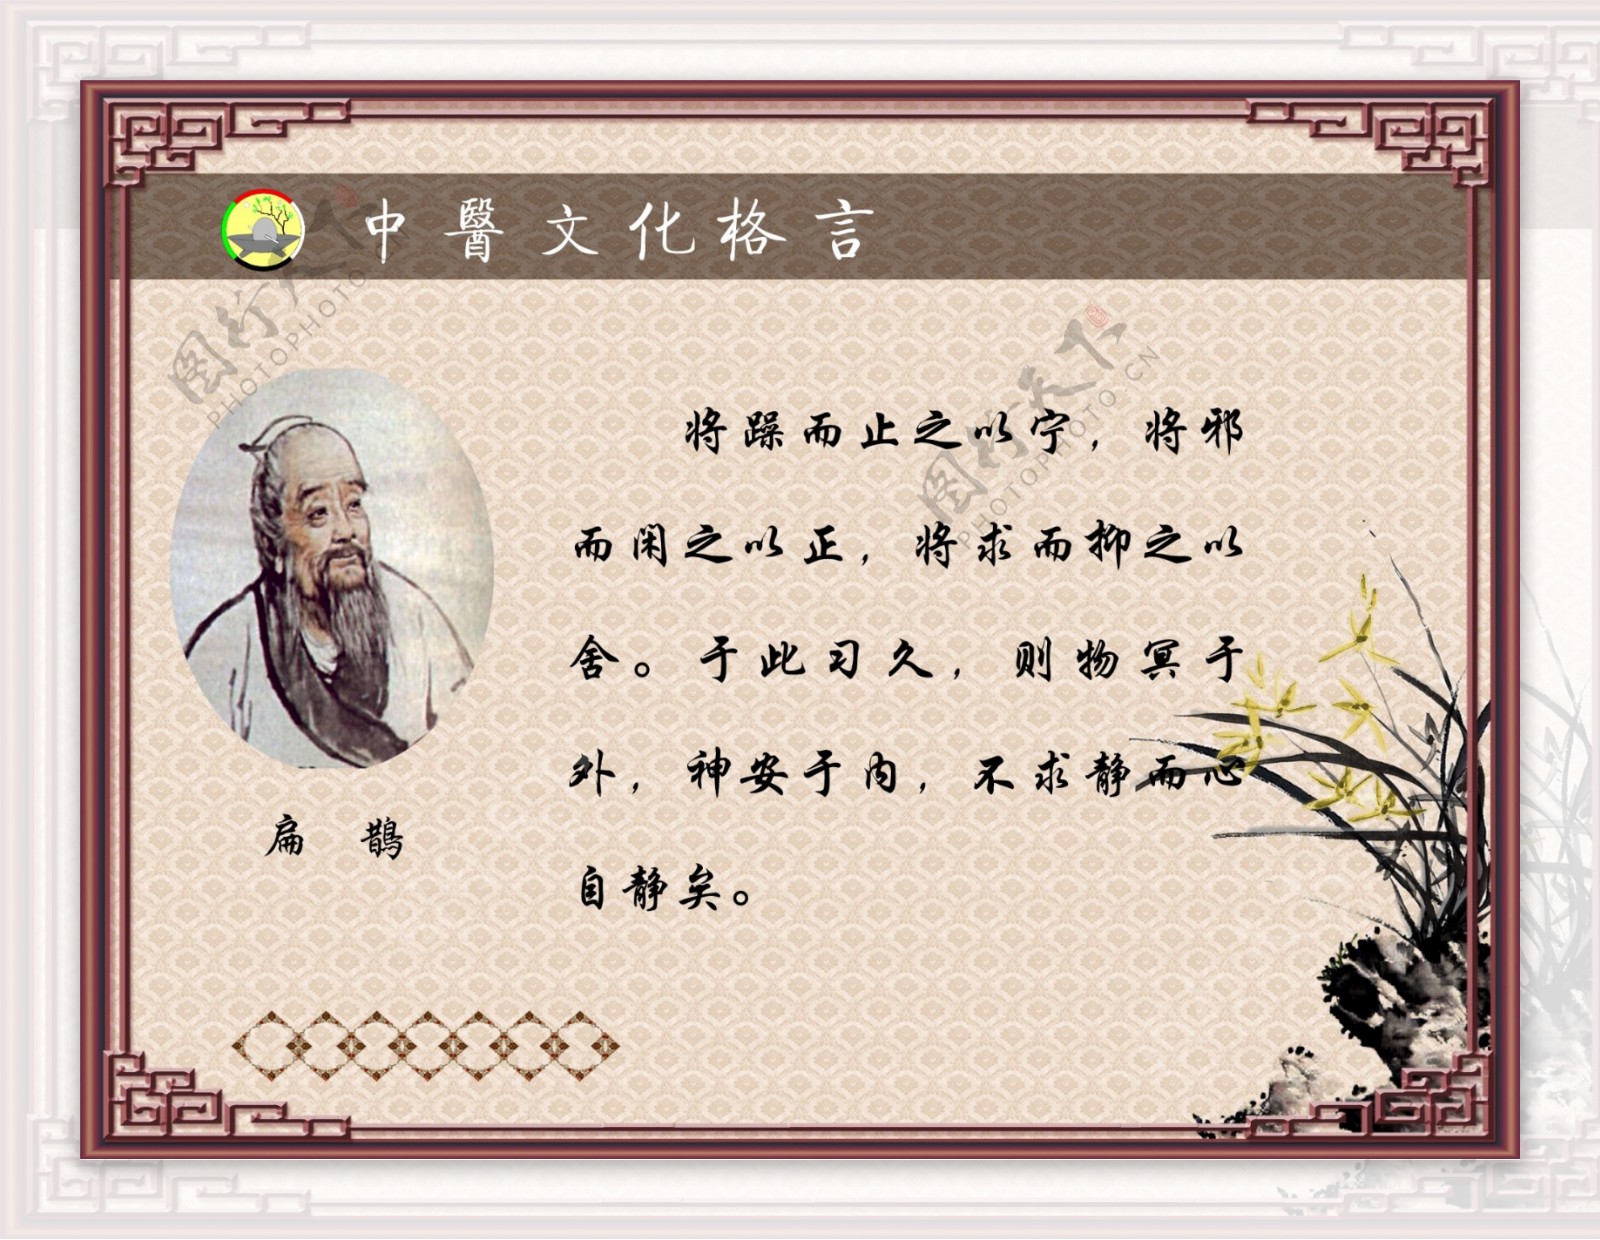 中医文化格言图片